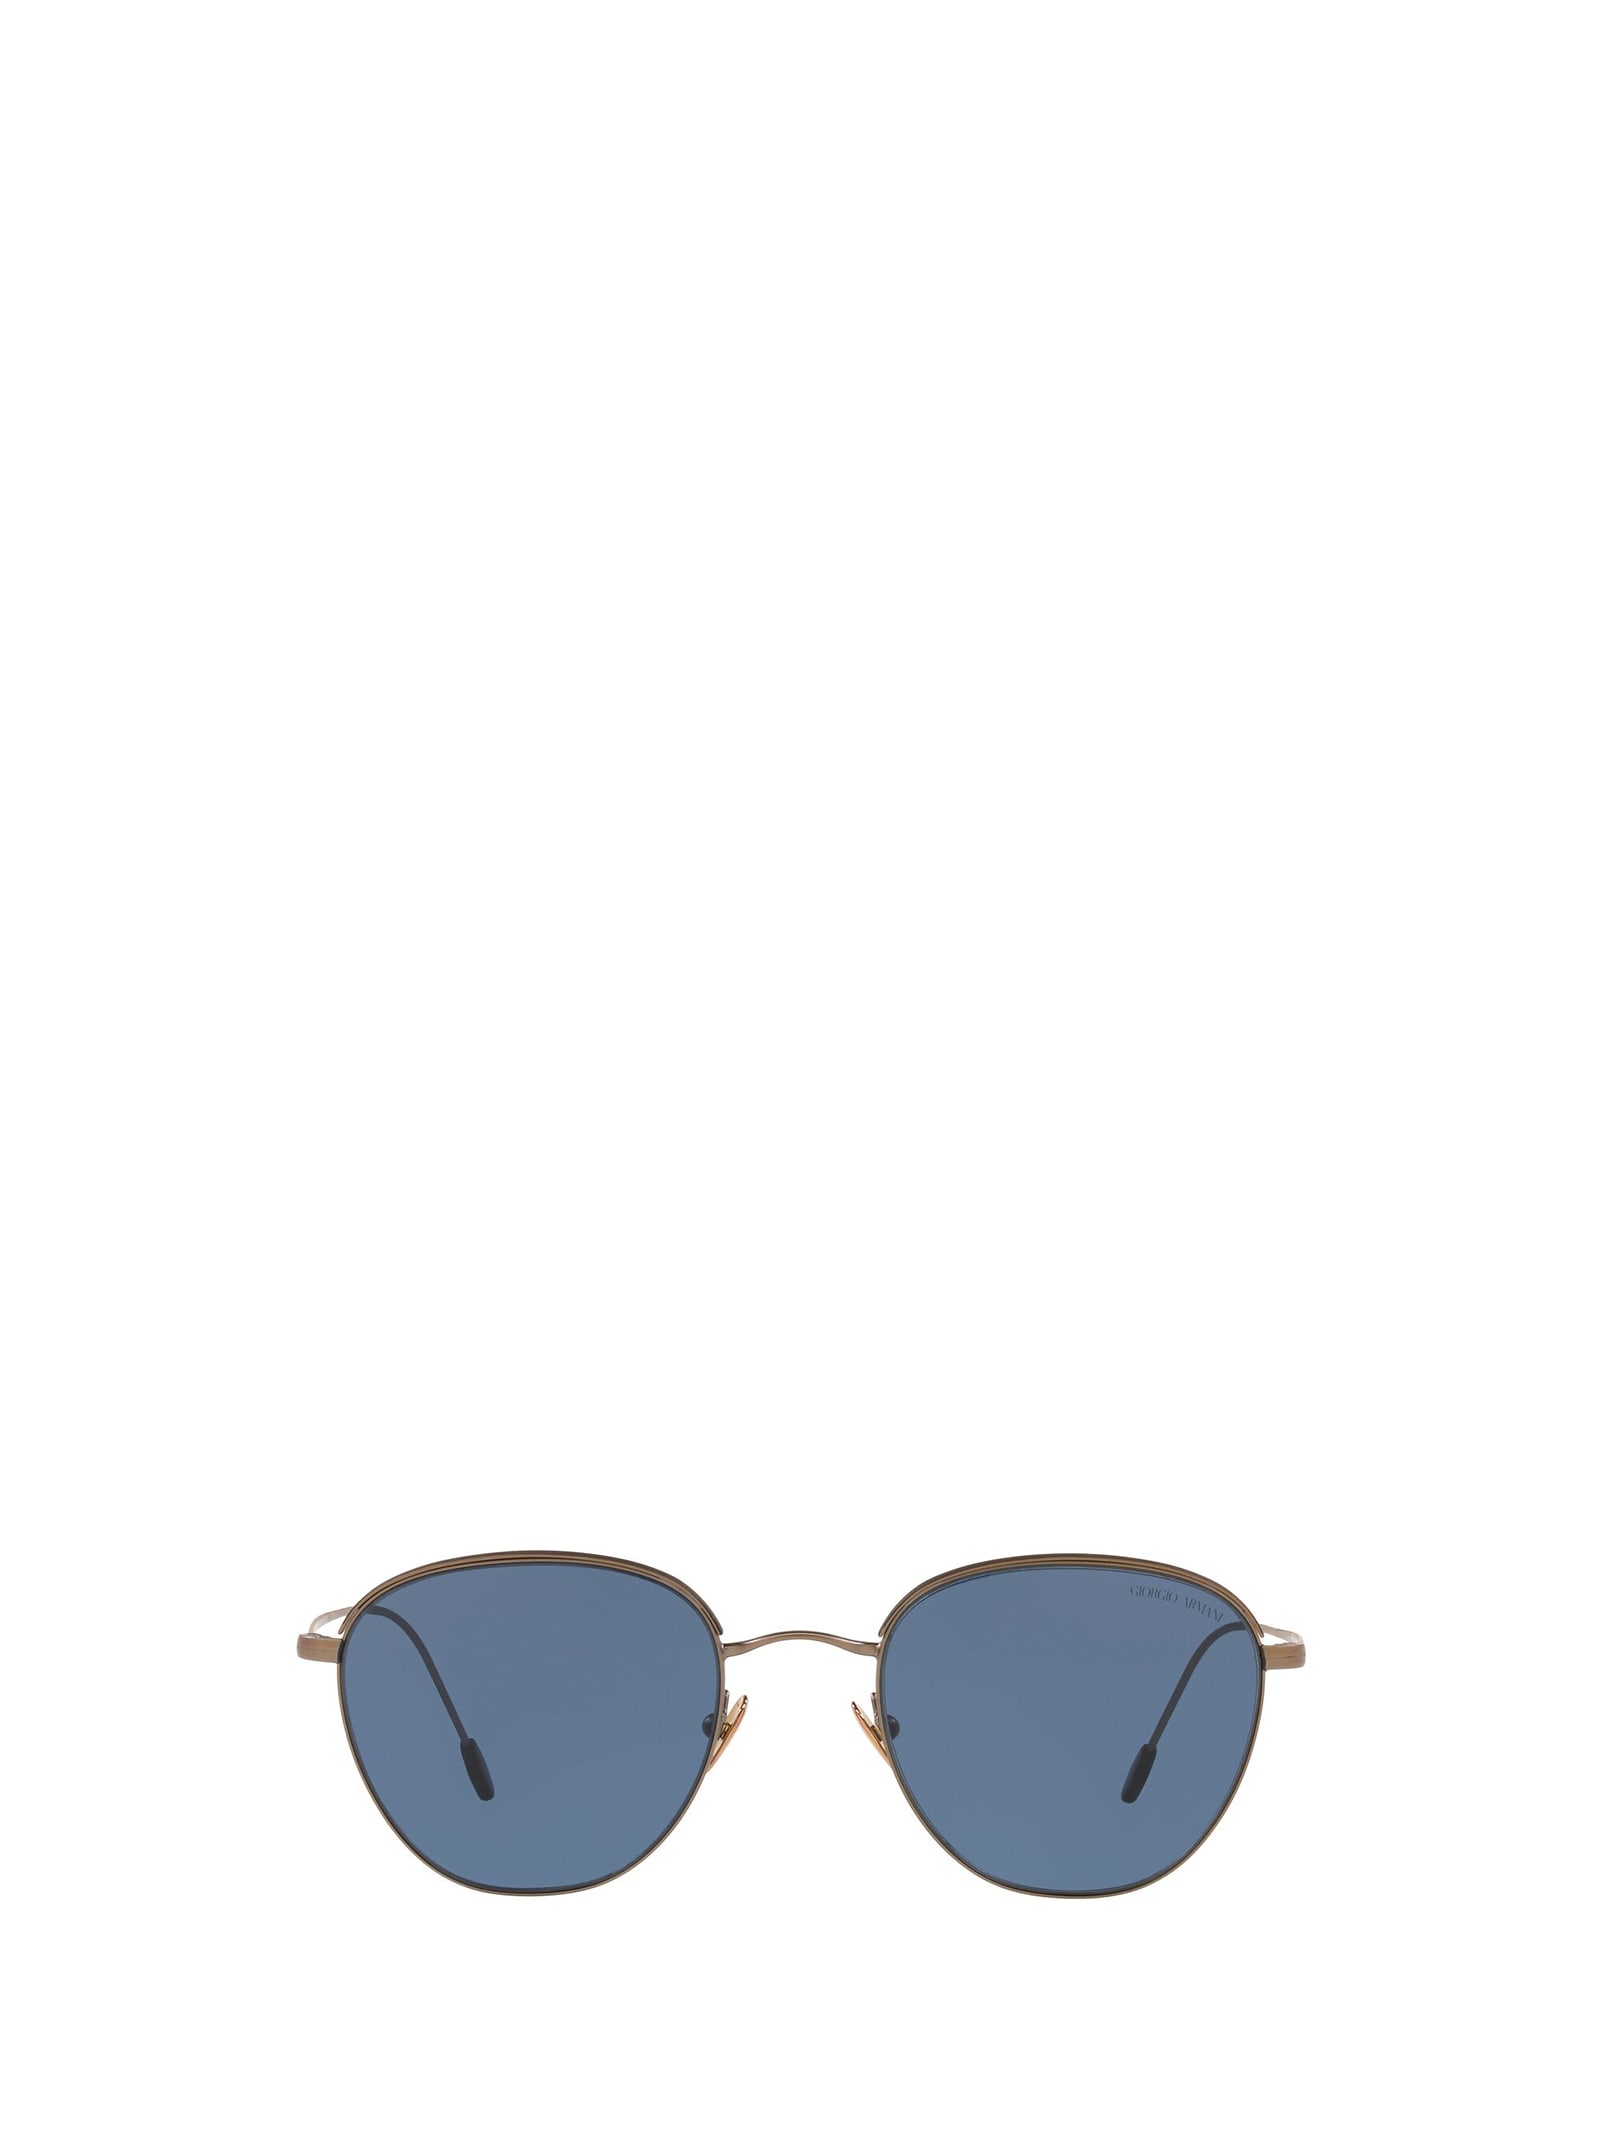 giorgio armani ar6048 matte bronze / matte black sunglasses